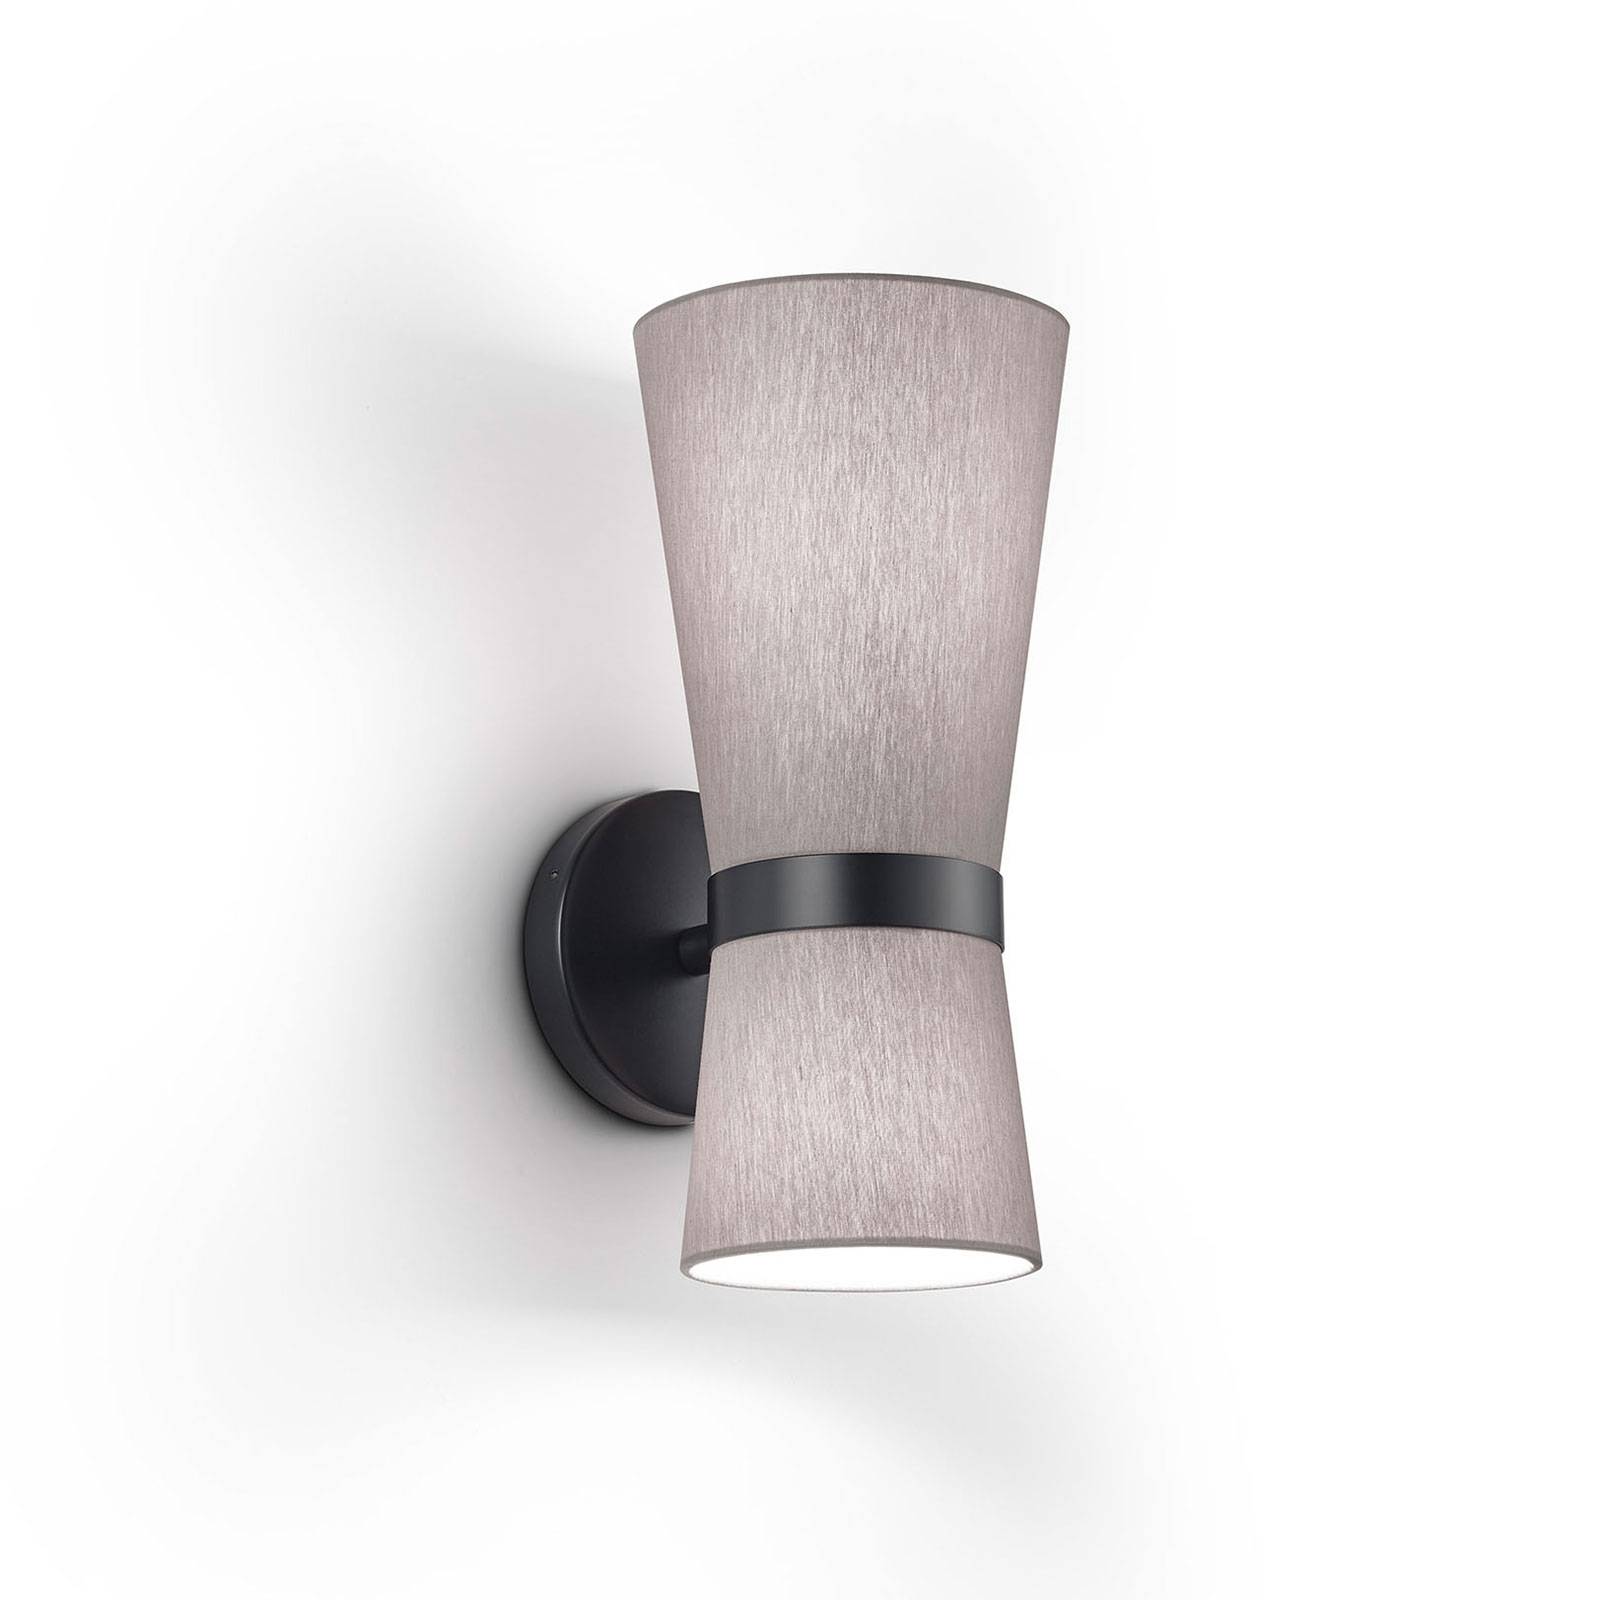 Yuna-W wall lamp black, foggy grey, movable